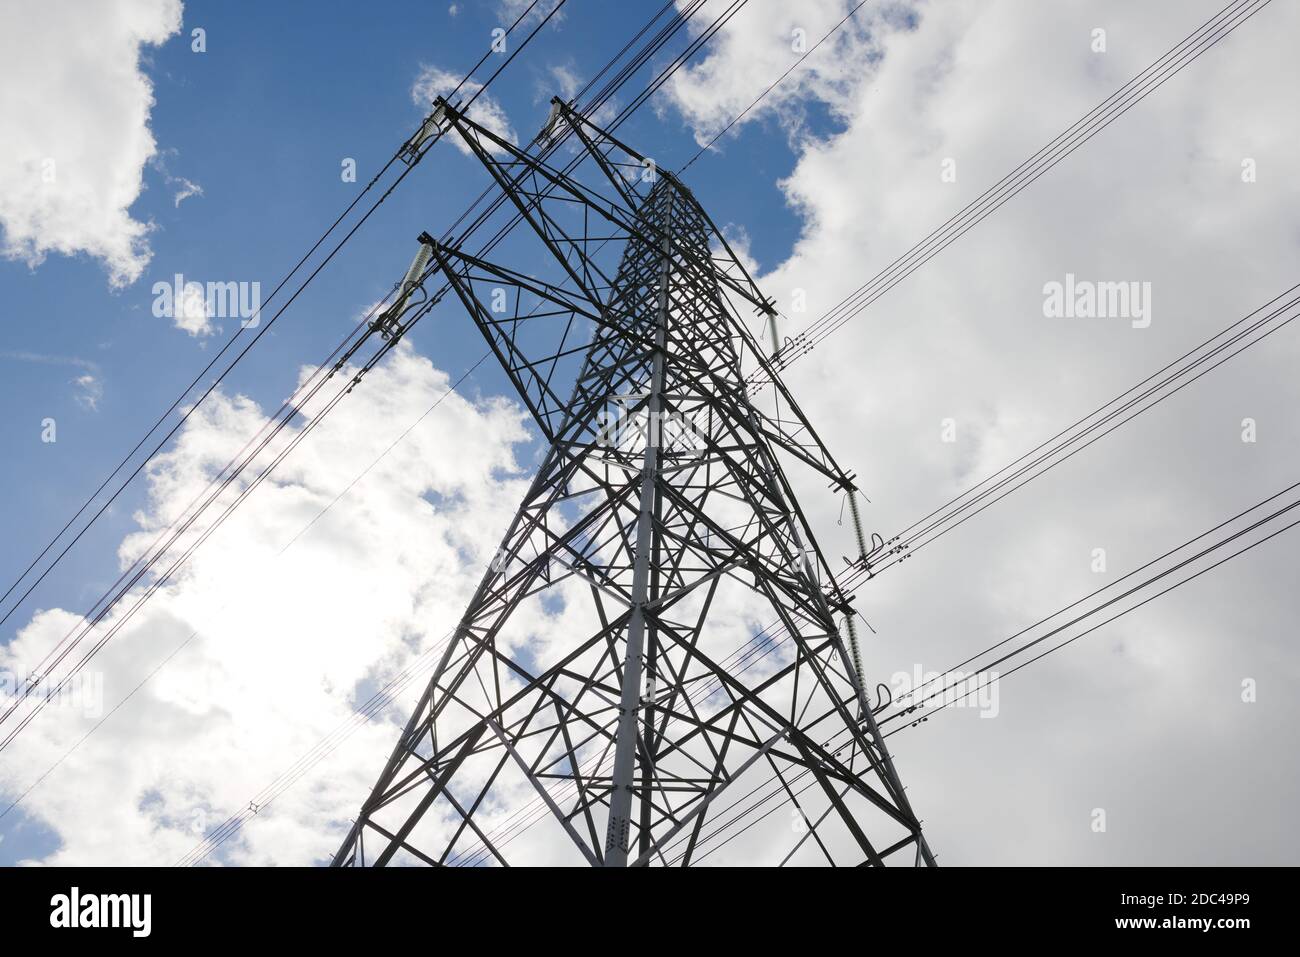 Image à angle bas d'une tour de réseau de transmission électrique. Lignes haute tension silhouetées contre le ciel de l'été. Les entretoises pendent de la tour Banque D'Images